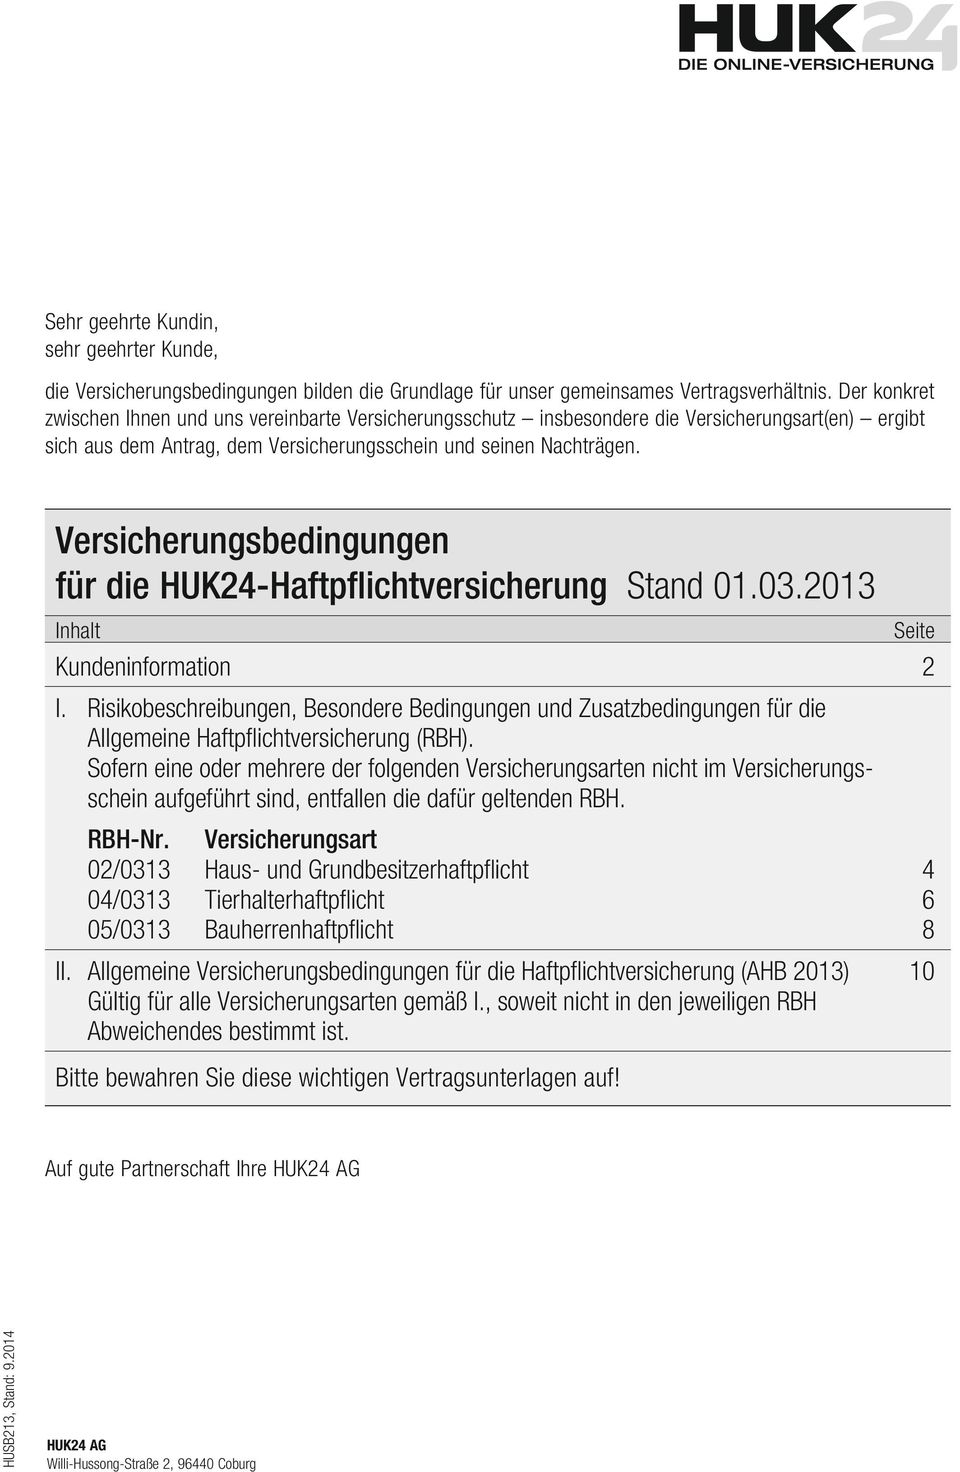 Versicherungsbedingungen für die HUK24-Haftpflichtversicherung Stand 01.03.2013 Inhalt Kundeninformation 2 I.